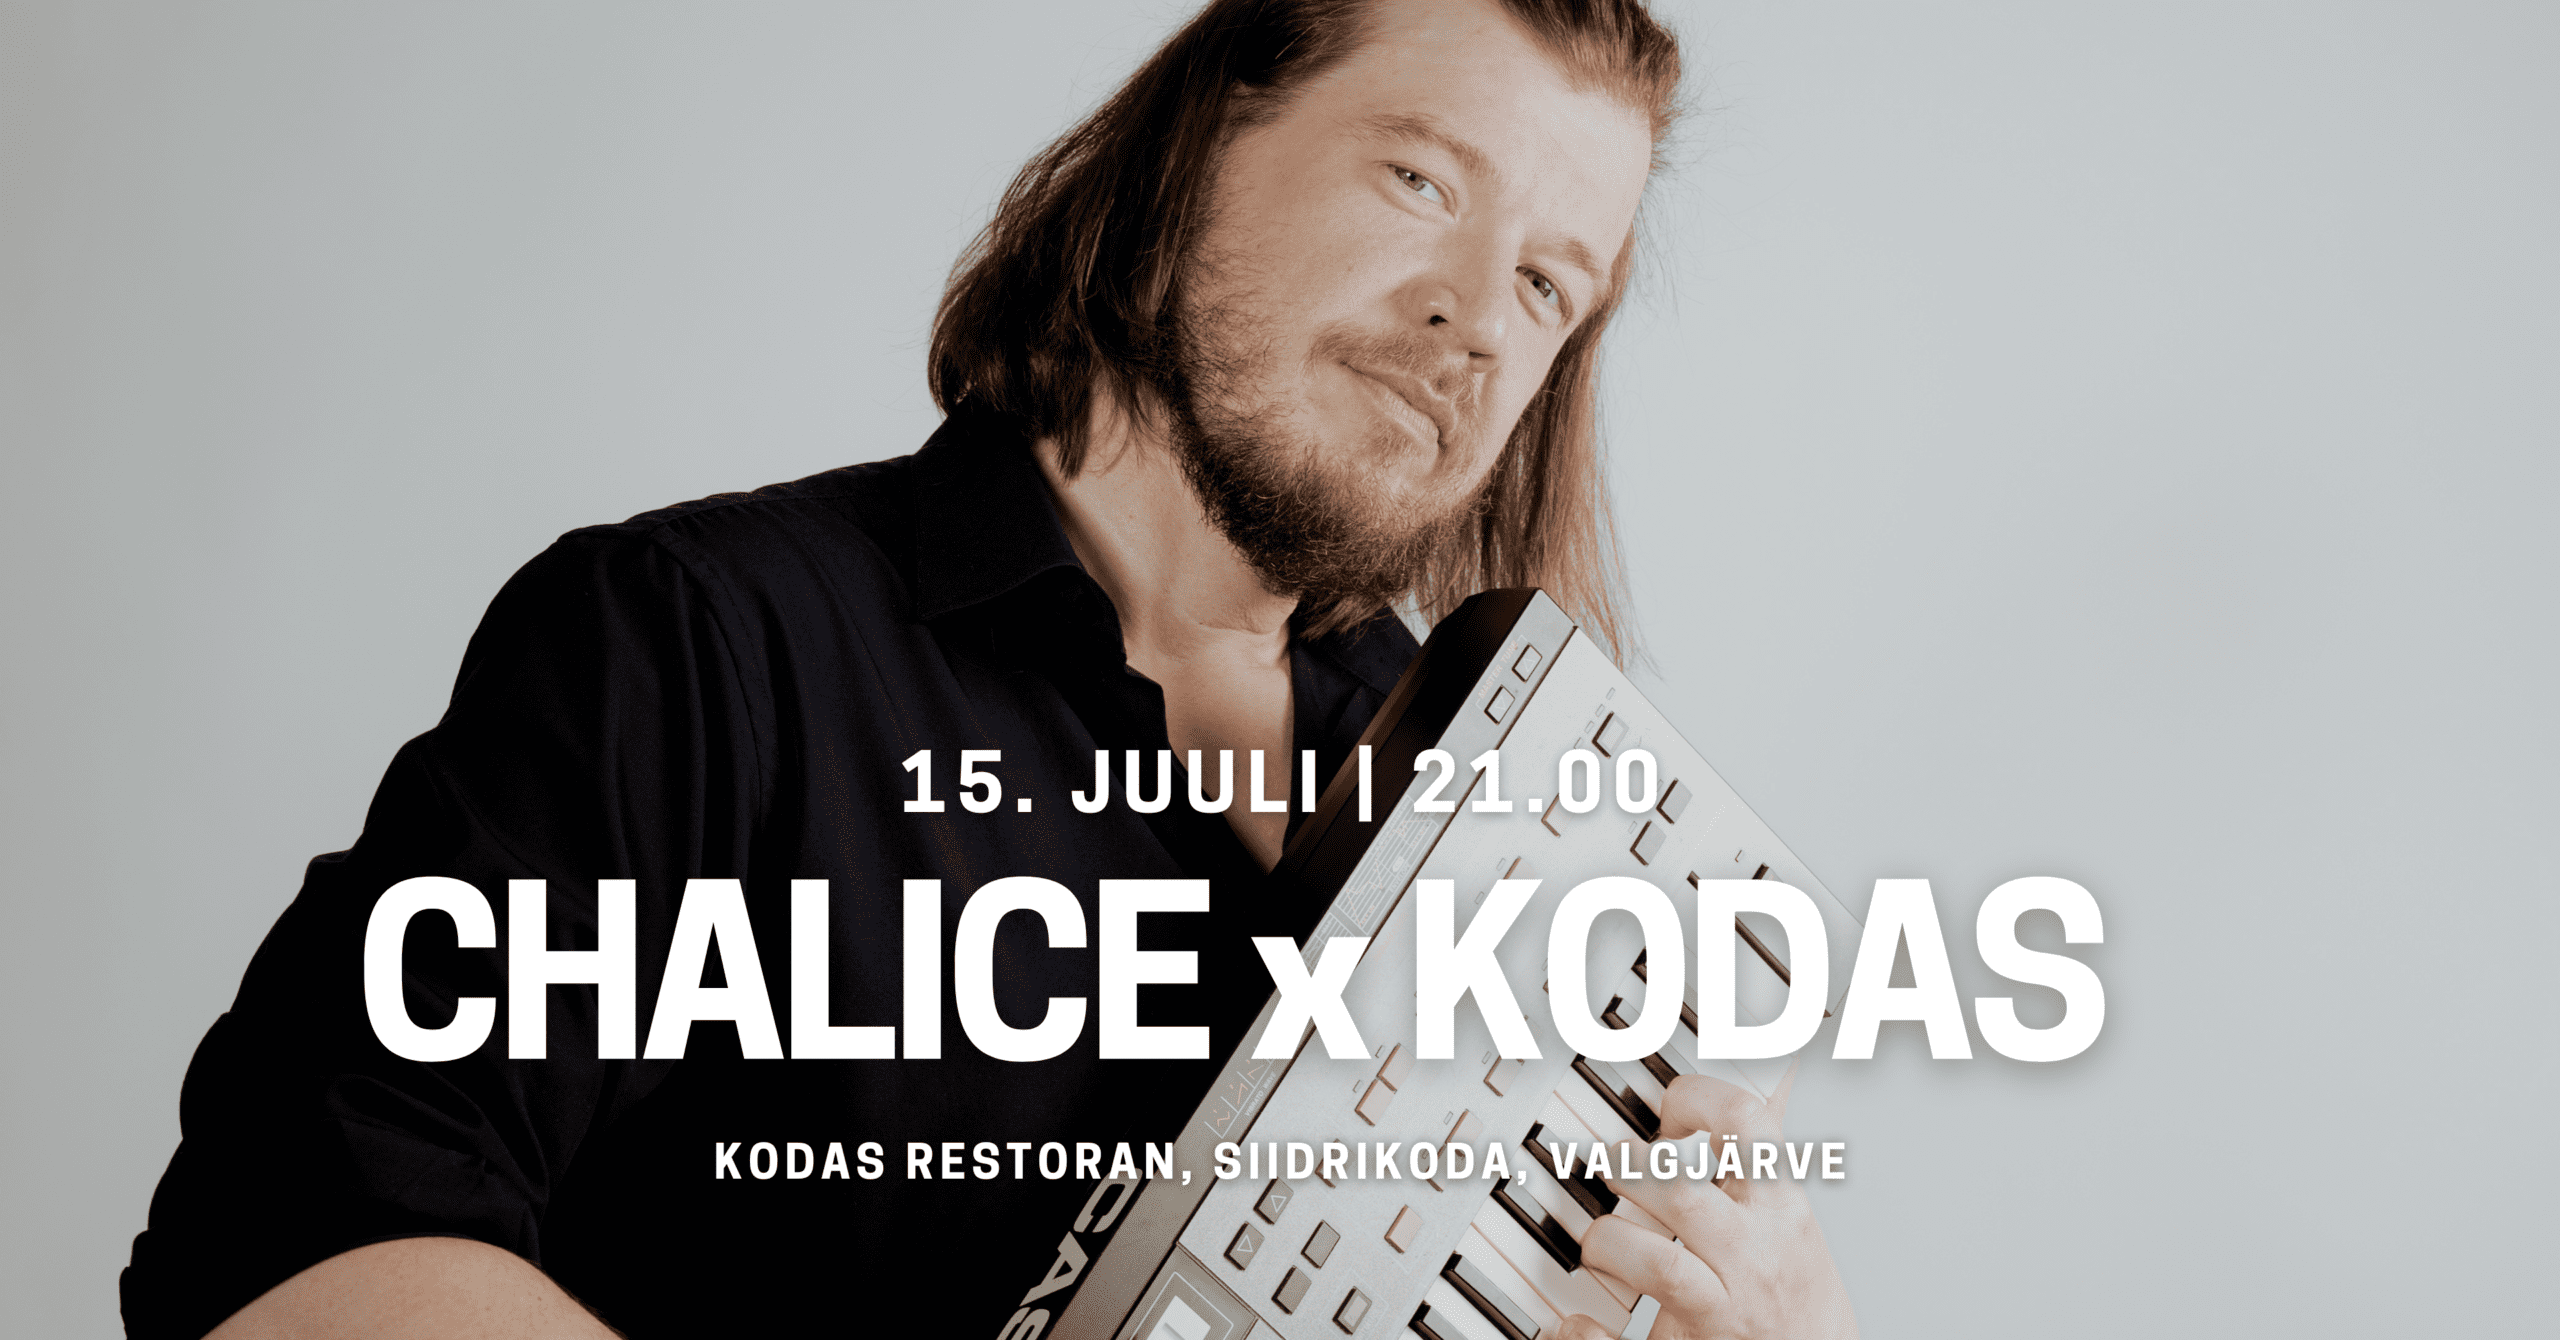 Pildil Chalice ning info kontserti kohta KODAS restoranis 15. juulil.